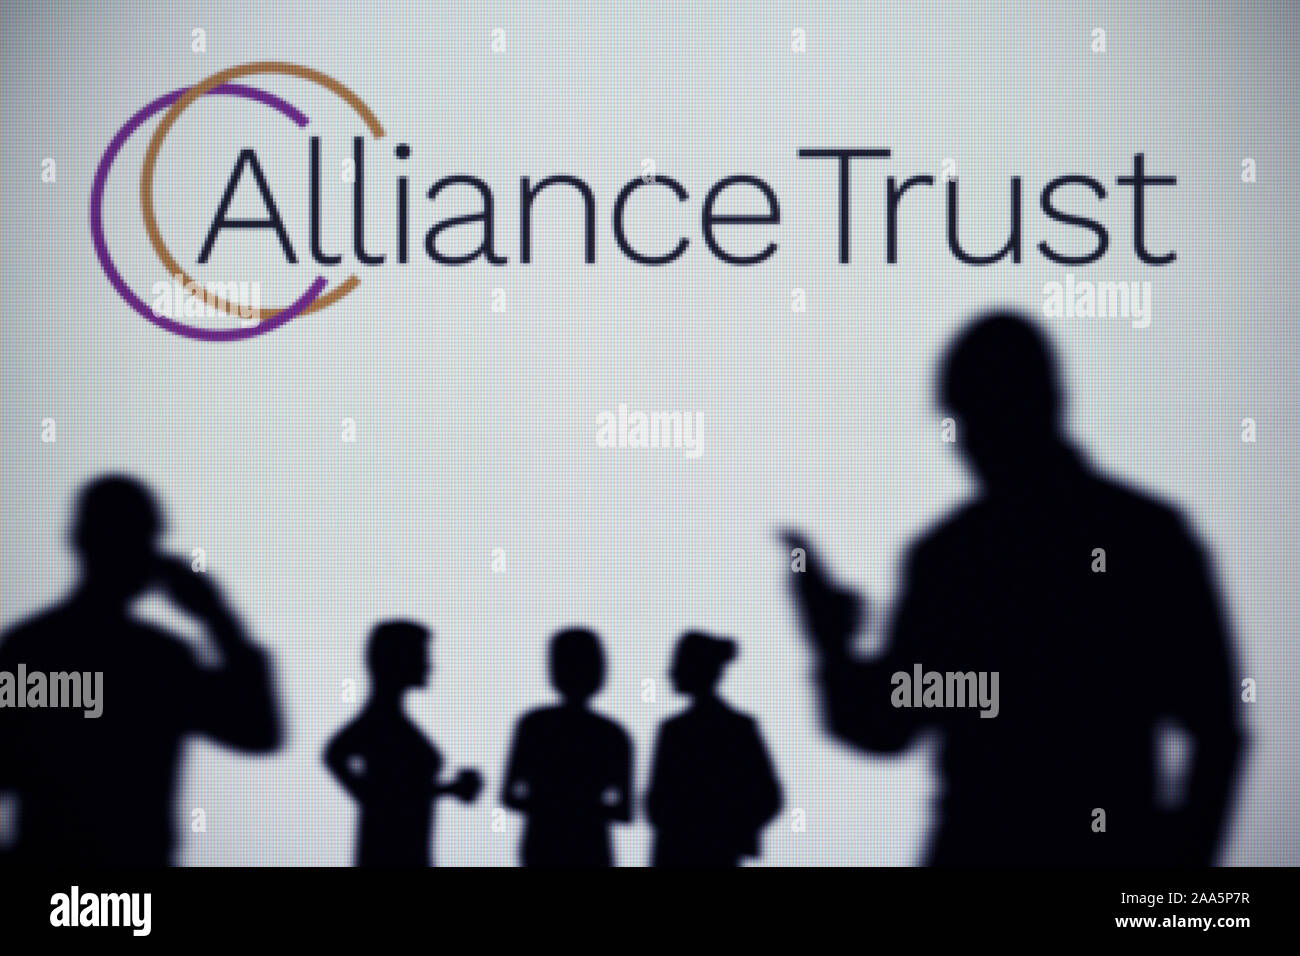 La Alliance trust logo è visibile su uno schermo a LED in background mentre si profila una persona utilizza uno smartphone (solo uso editoriale) Foto Stock